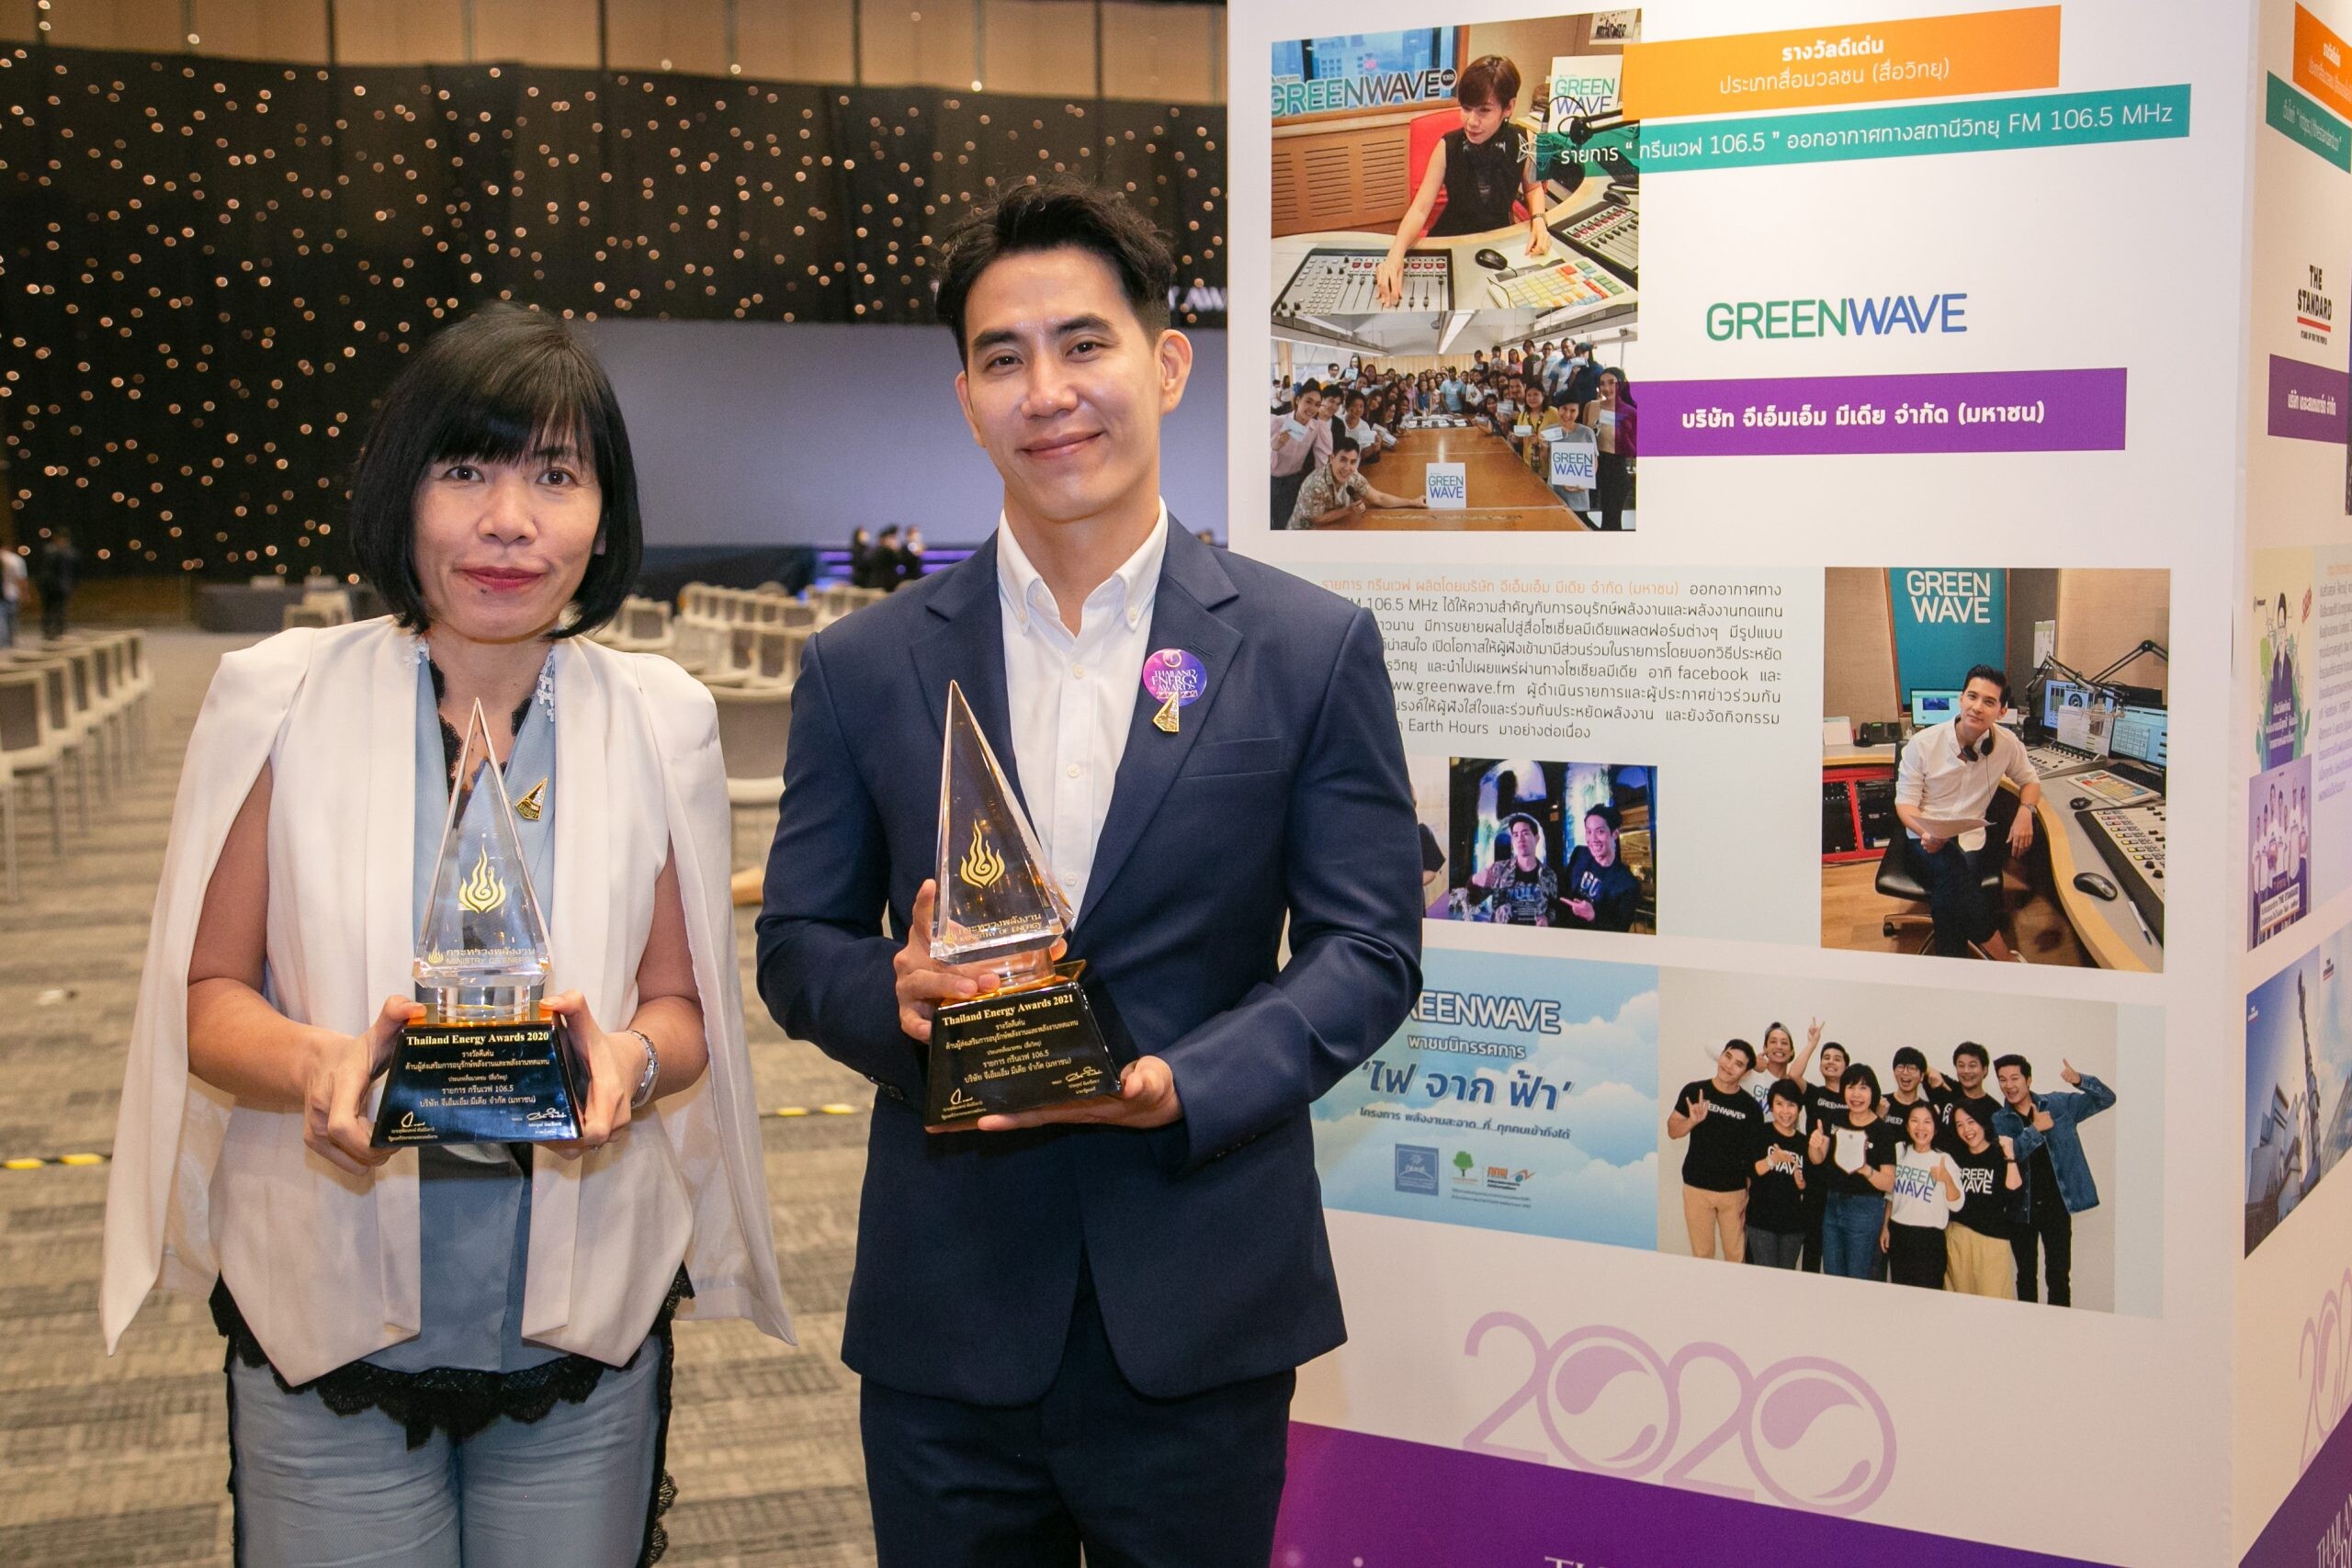 กรีนเวฟ คว้ารางวัล Thailand Energy Awards  2 ปีซ้อน  ตอกย้ำคลื่นวิทยุหนึ่งเดียวเพื่อสิ่งแวดล้อม